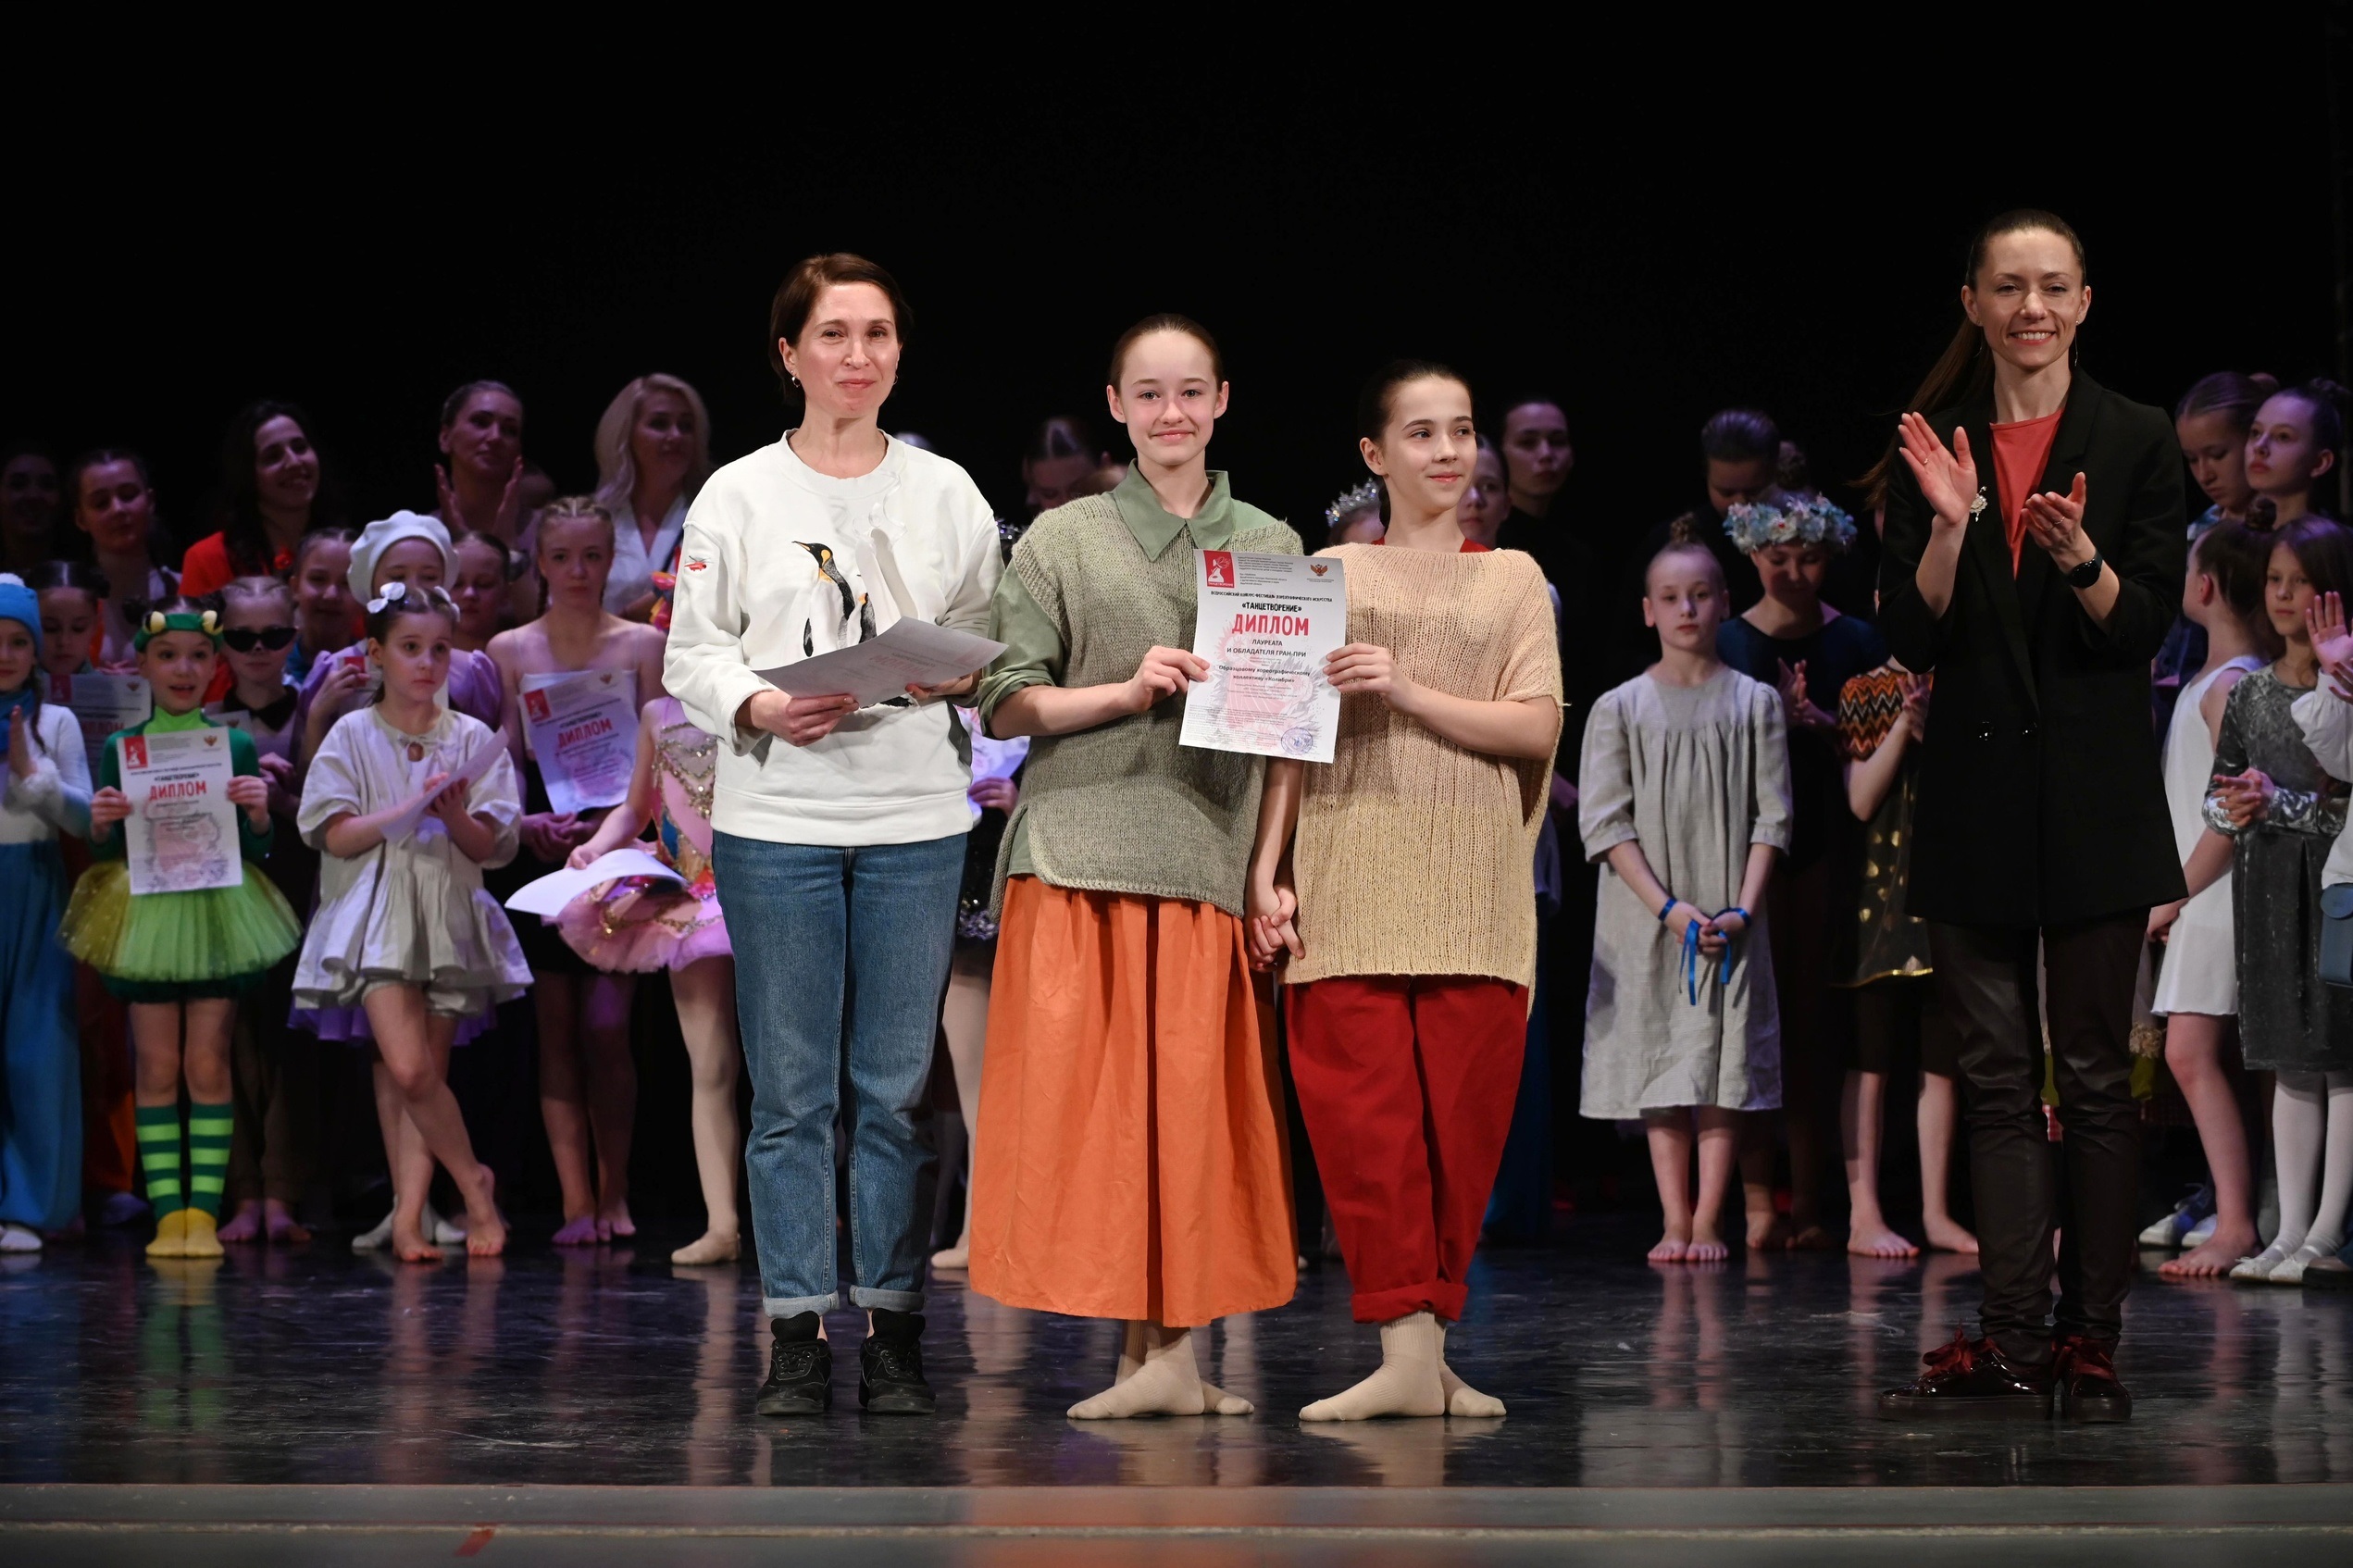 В Иванове завершился XIII Всероссийский конкурс-фестиваль хореографического искусства «Танцетворение».